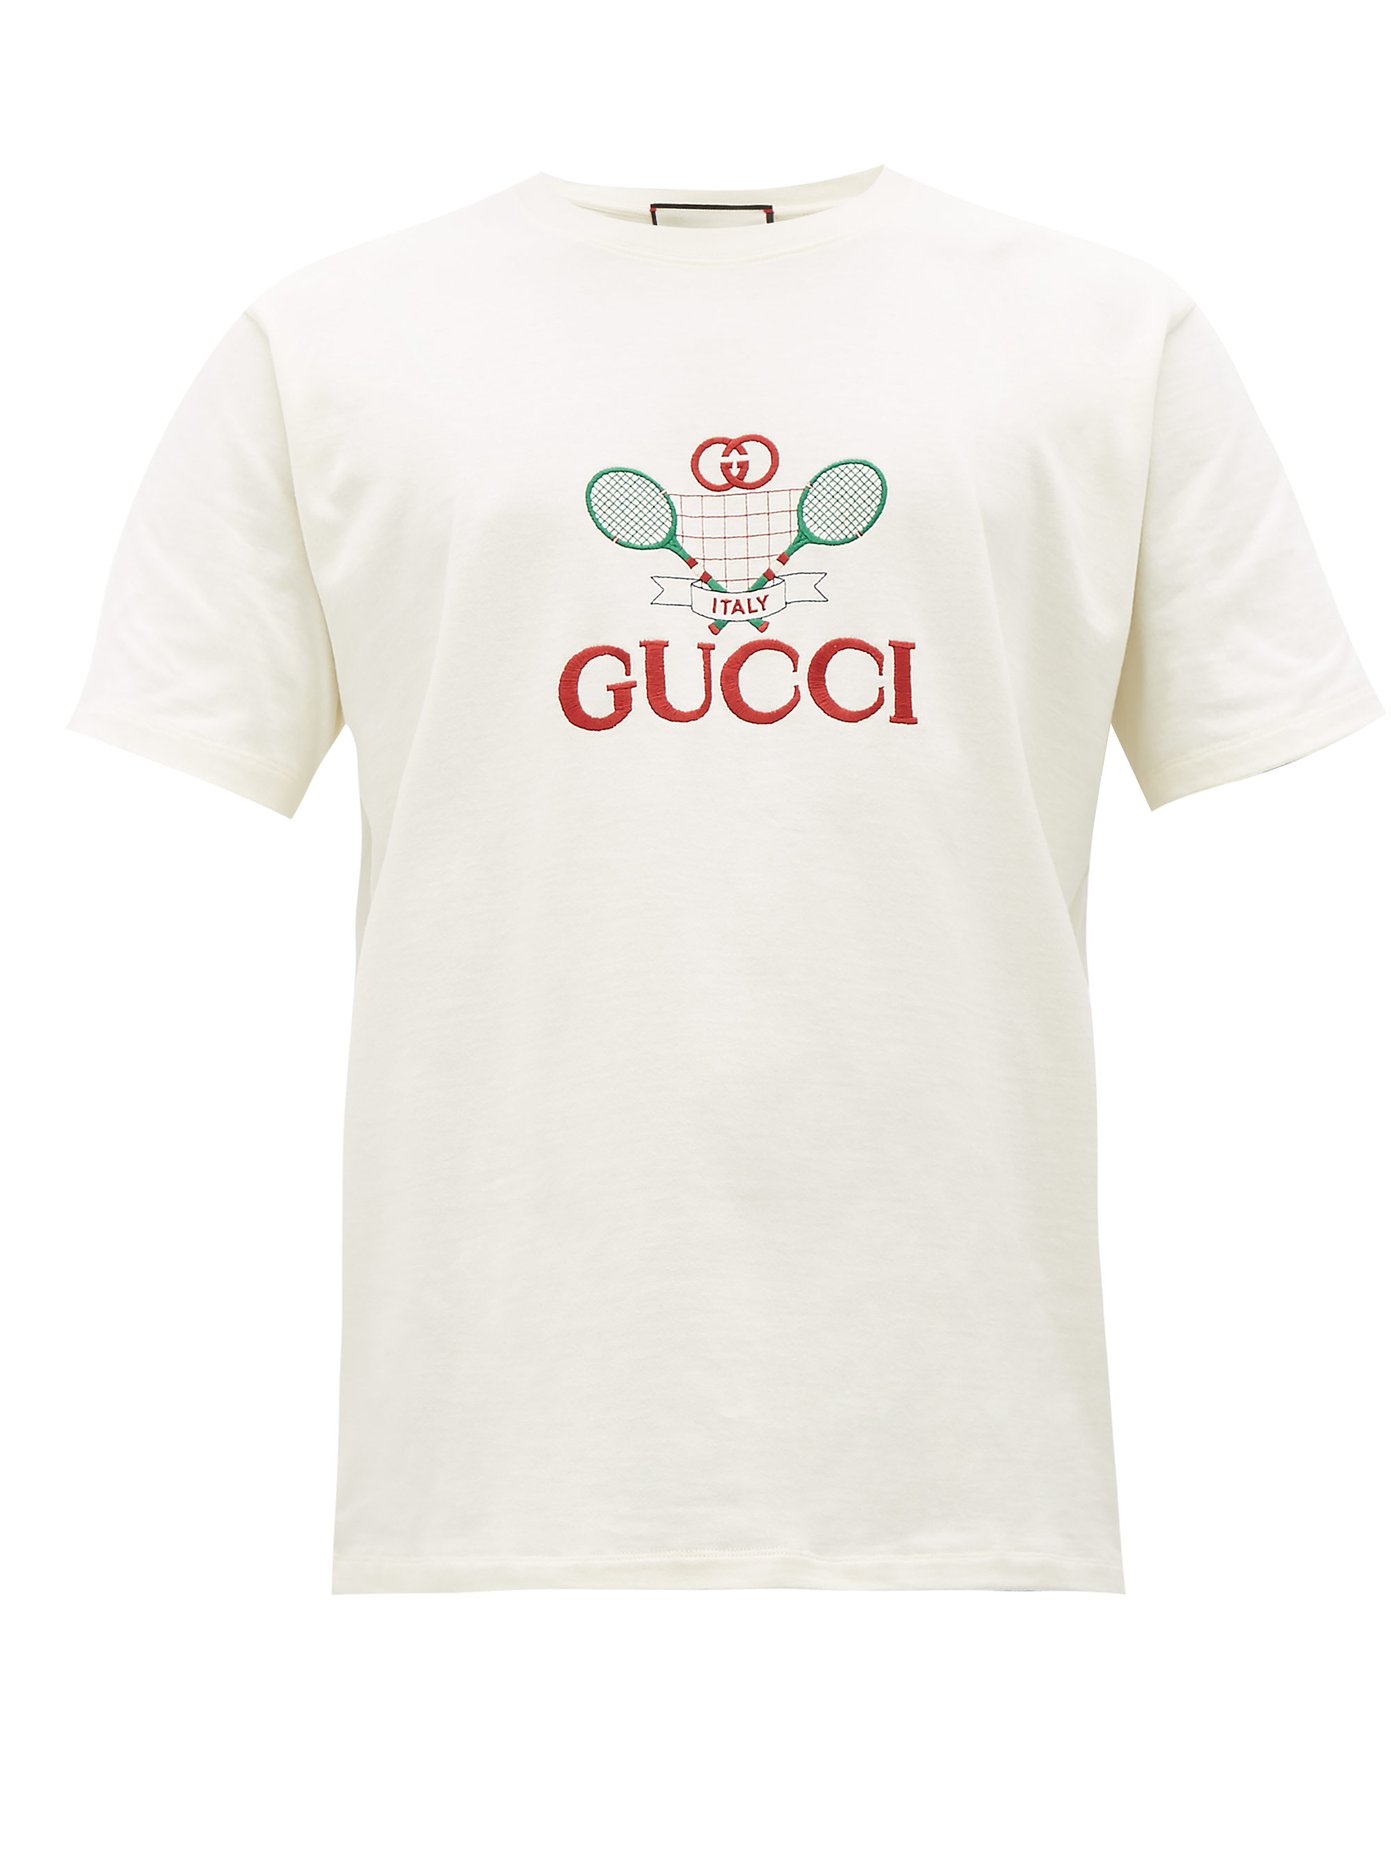 gucci tennis tshirt